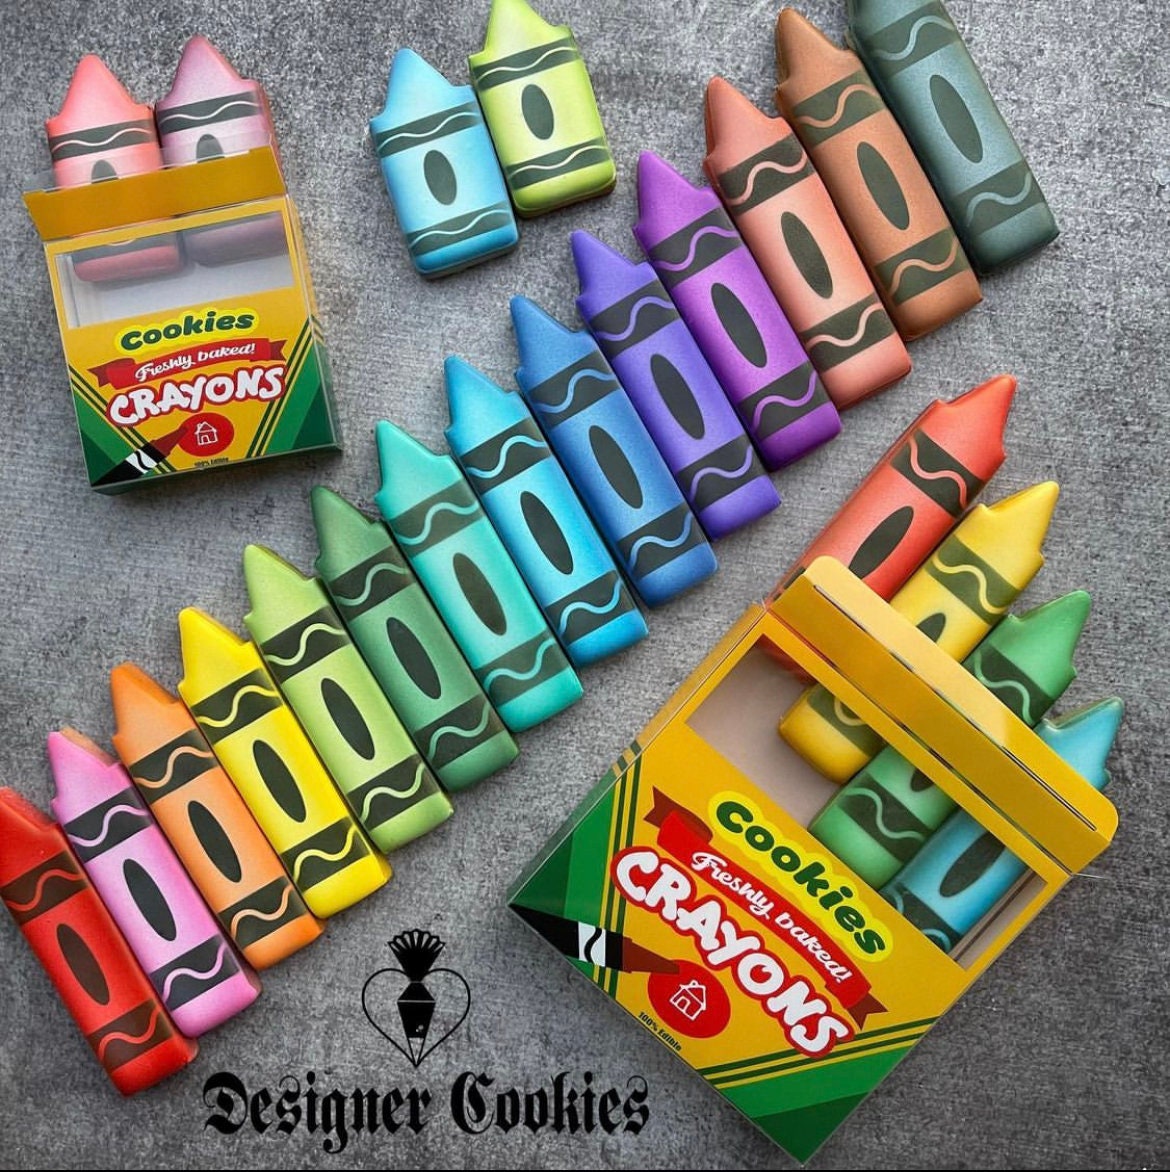 Carmel Lumber Crayon, Lumber Marking Crayon, Lumber Marker, Keel Crayon,  High-density Clay Based Paint Crayon, Pack of 12 